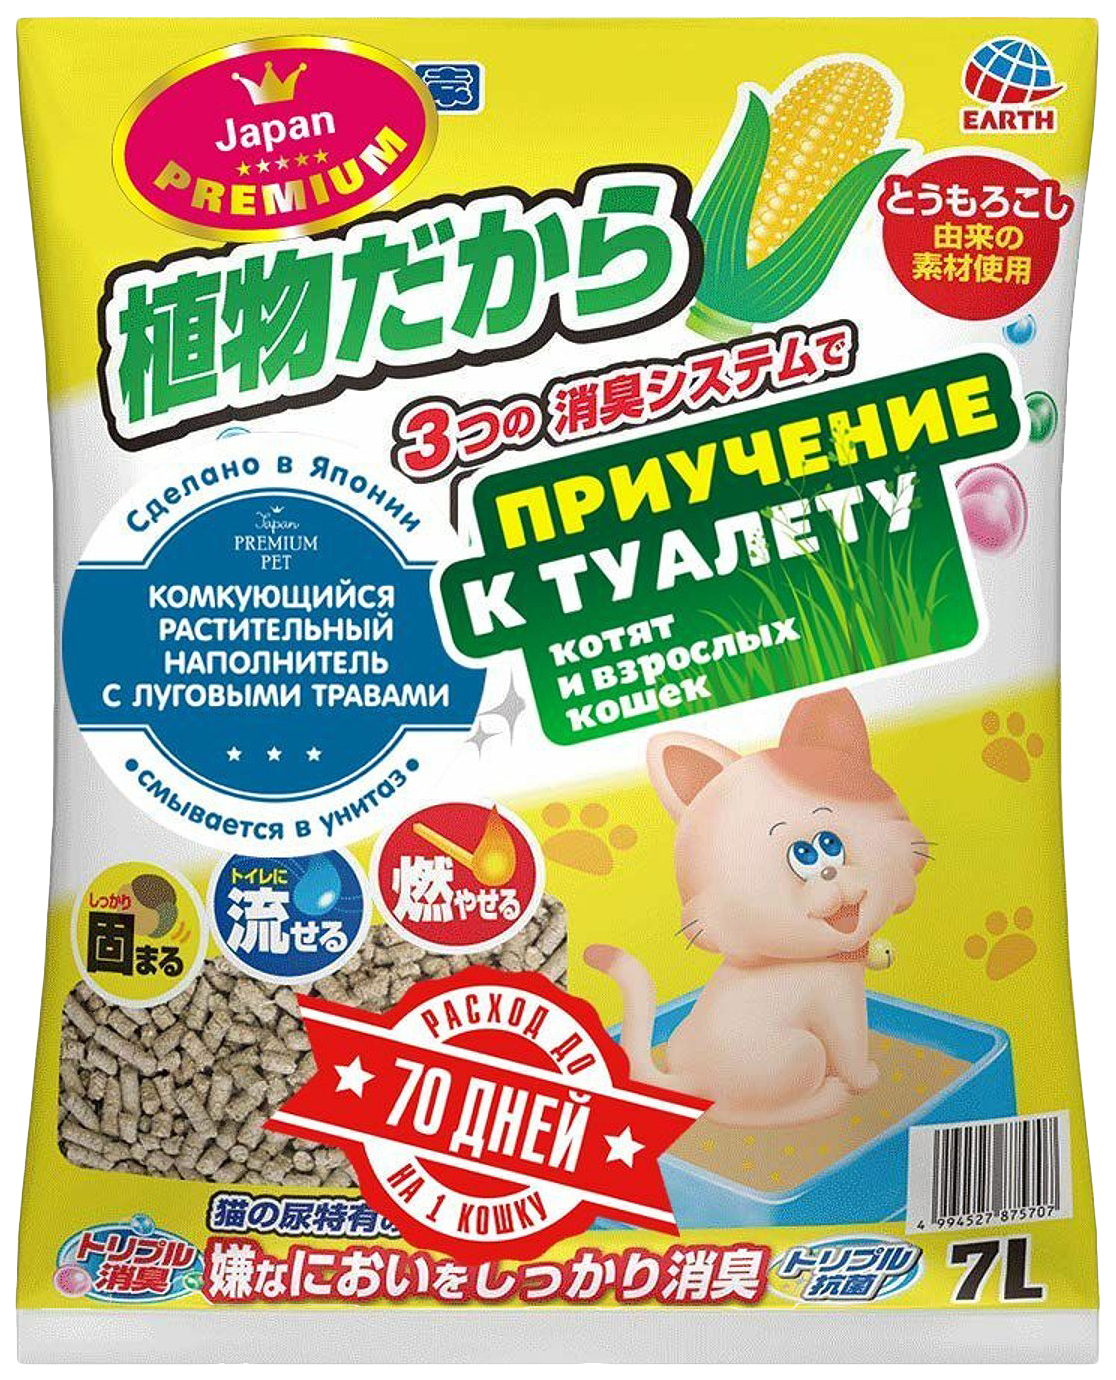 Наполнитель Japan Premium Pet ультракомкующийся растительный с луговыми травами 7 л